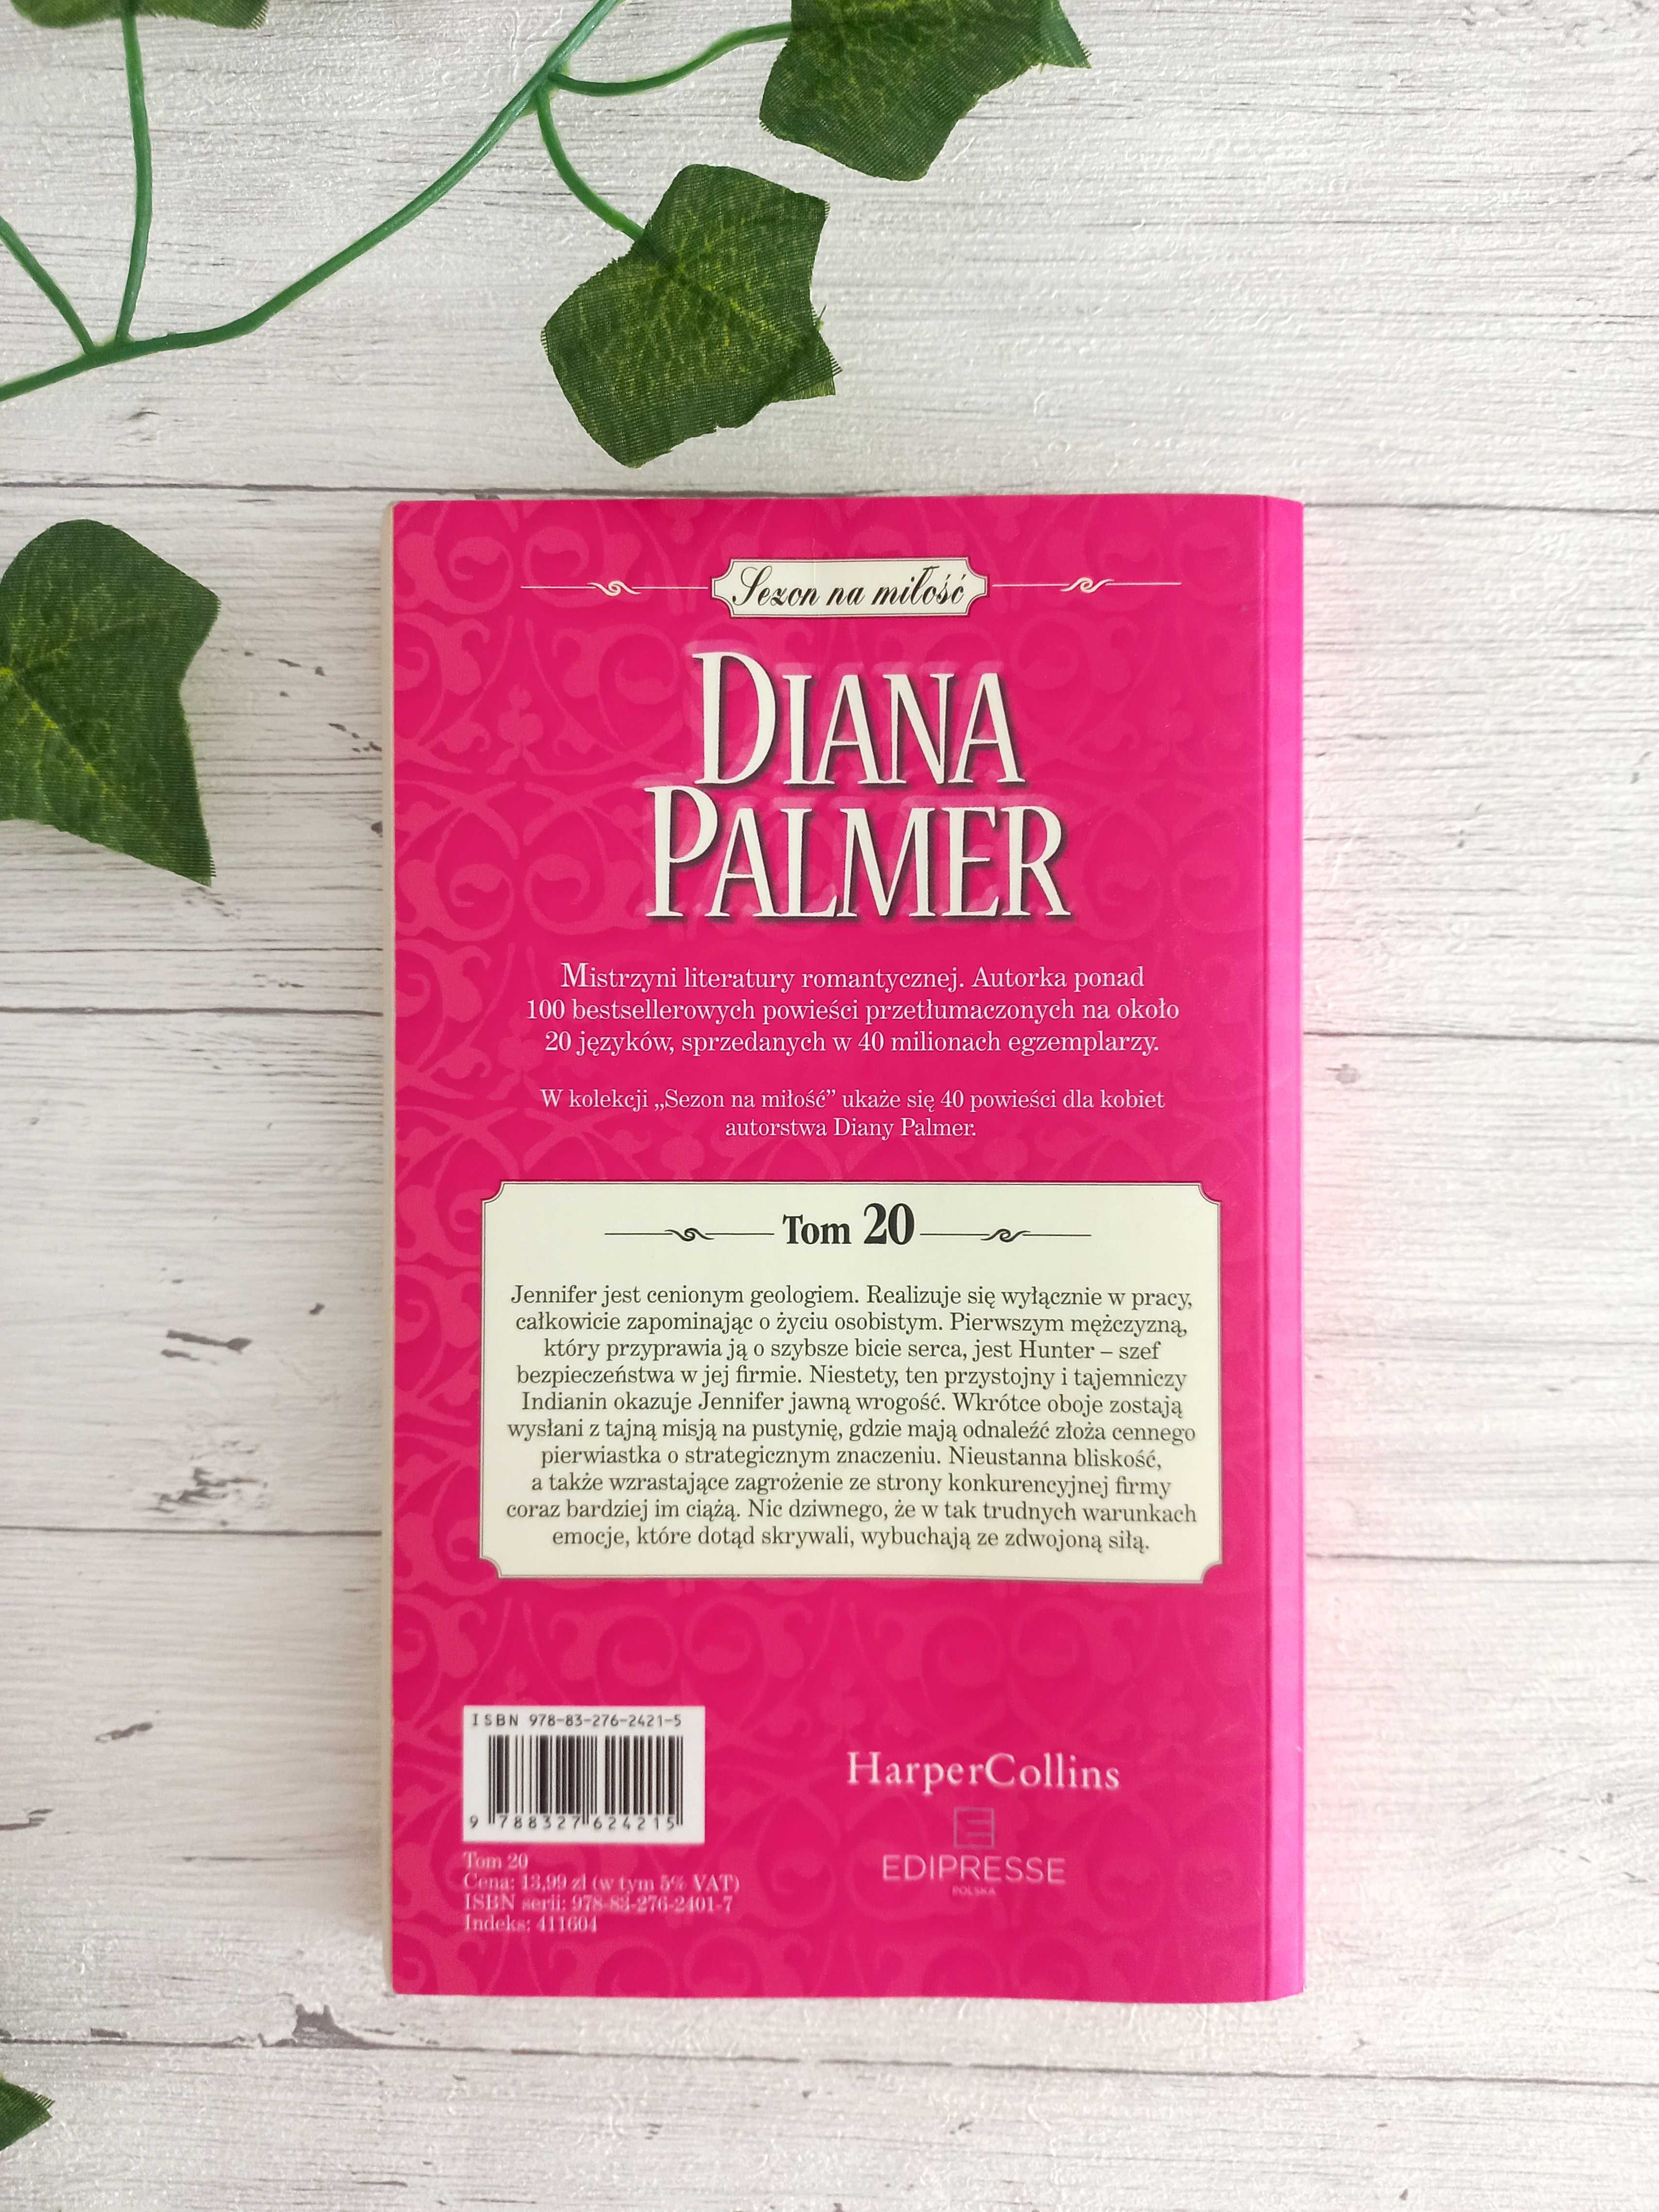 Sezon na miłość tom 20  Diana Palmer Kwiat opuncji